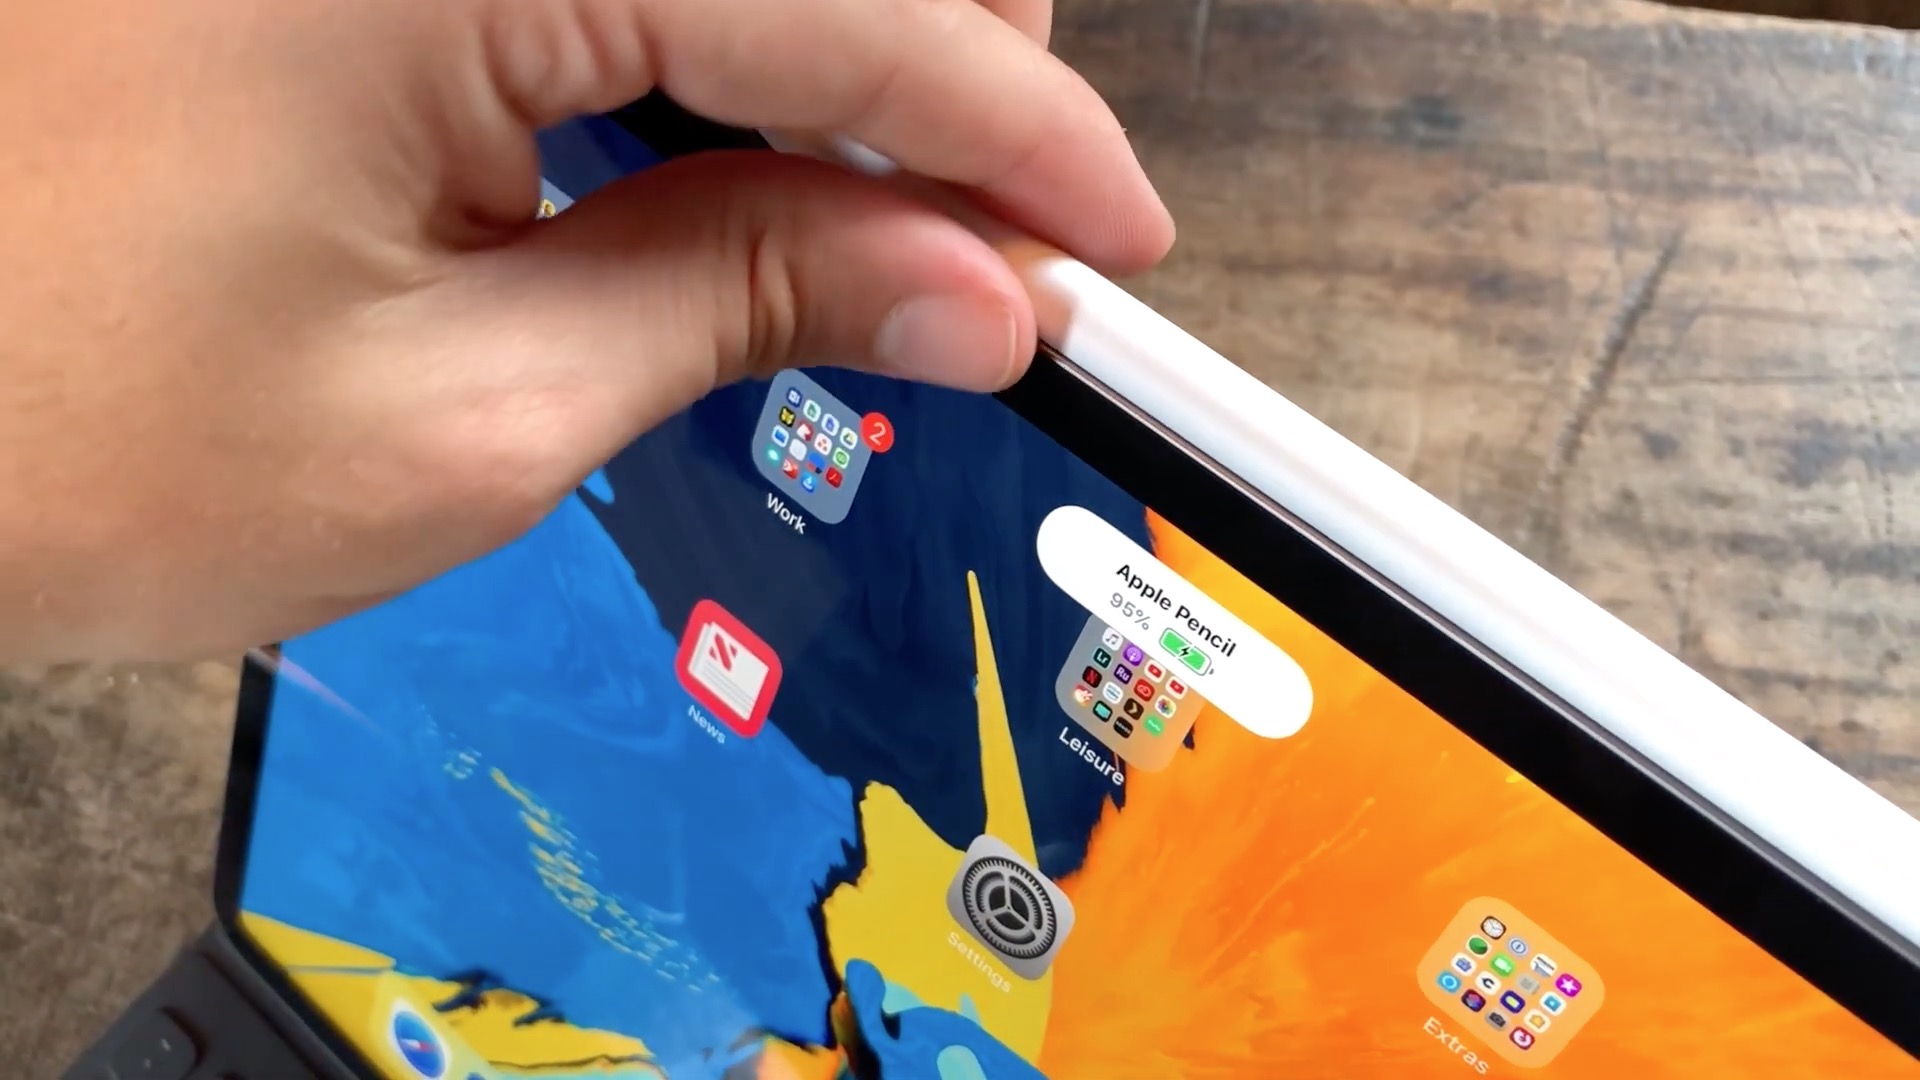 Ipad Pro Apple Pencil - Ipad Pro - HD Wallpaper 